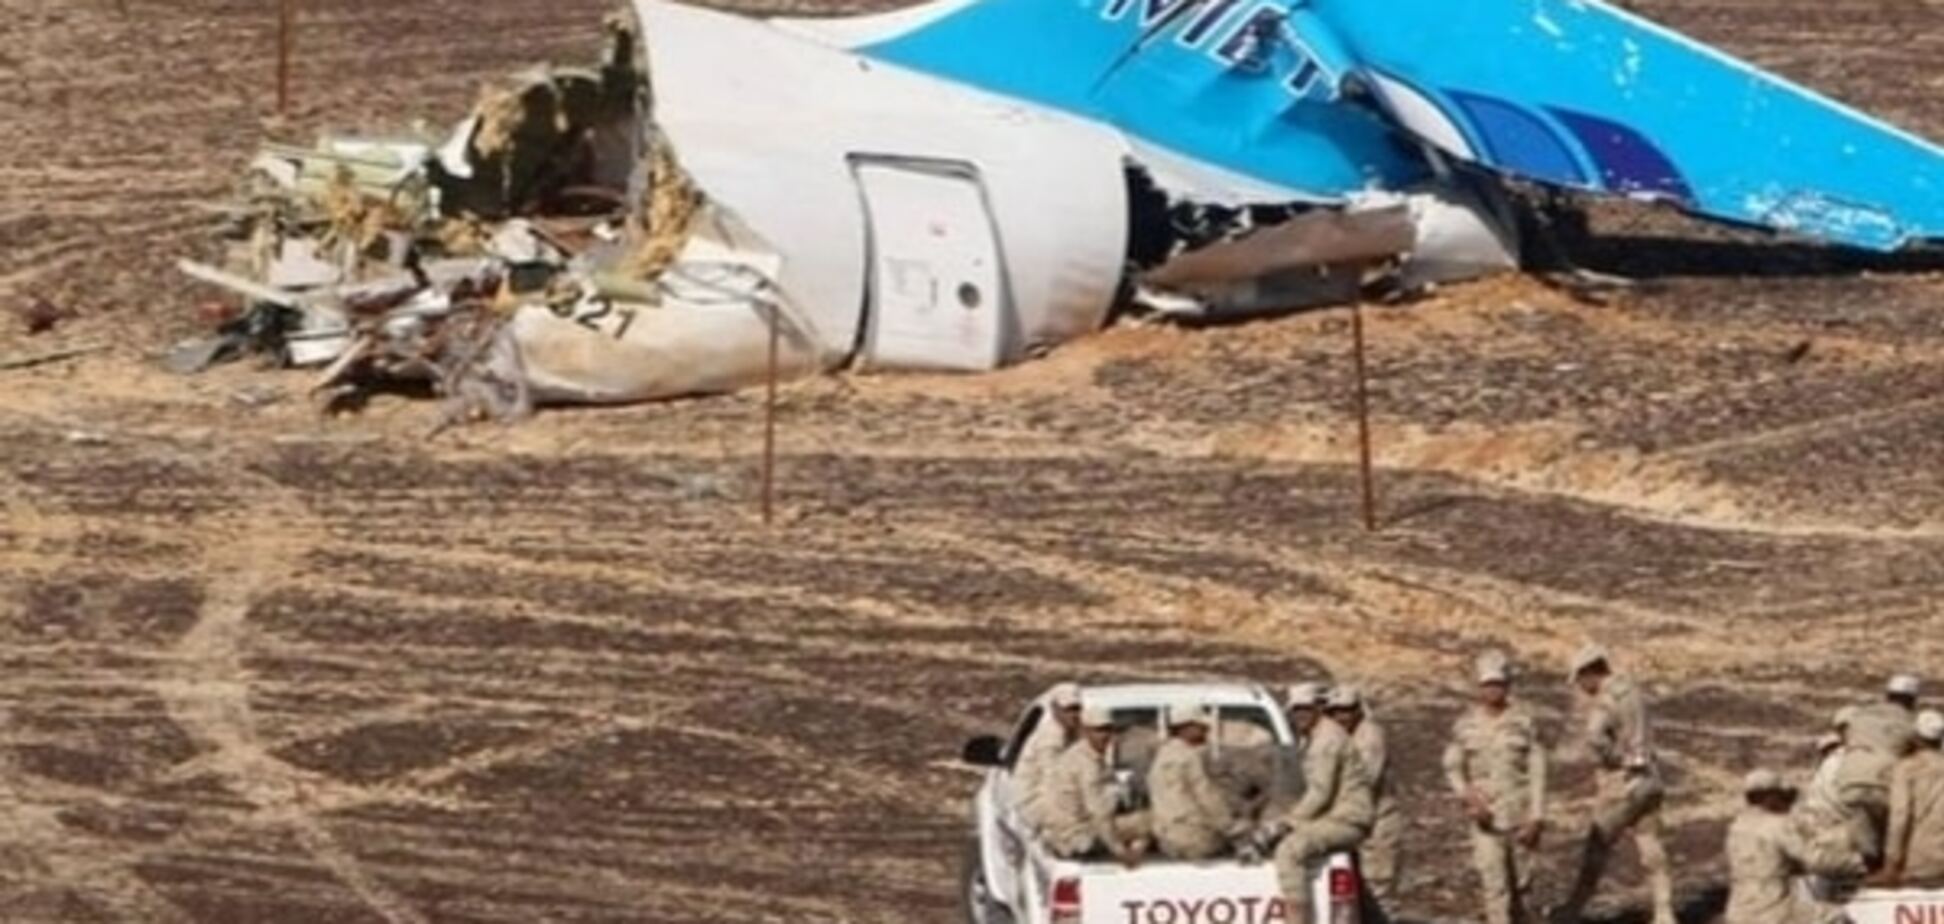 Майже половина росіян назвали теракт причиною загибелі A-321 в Єгипті